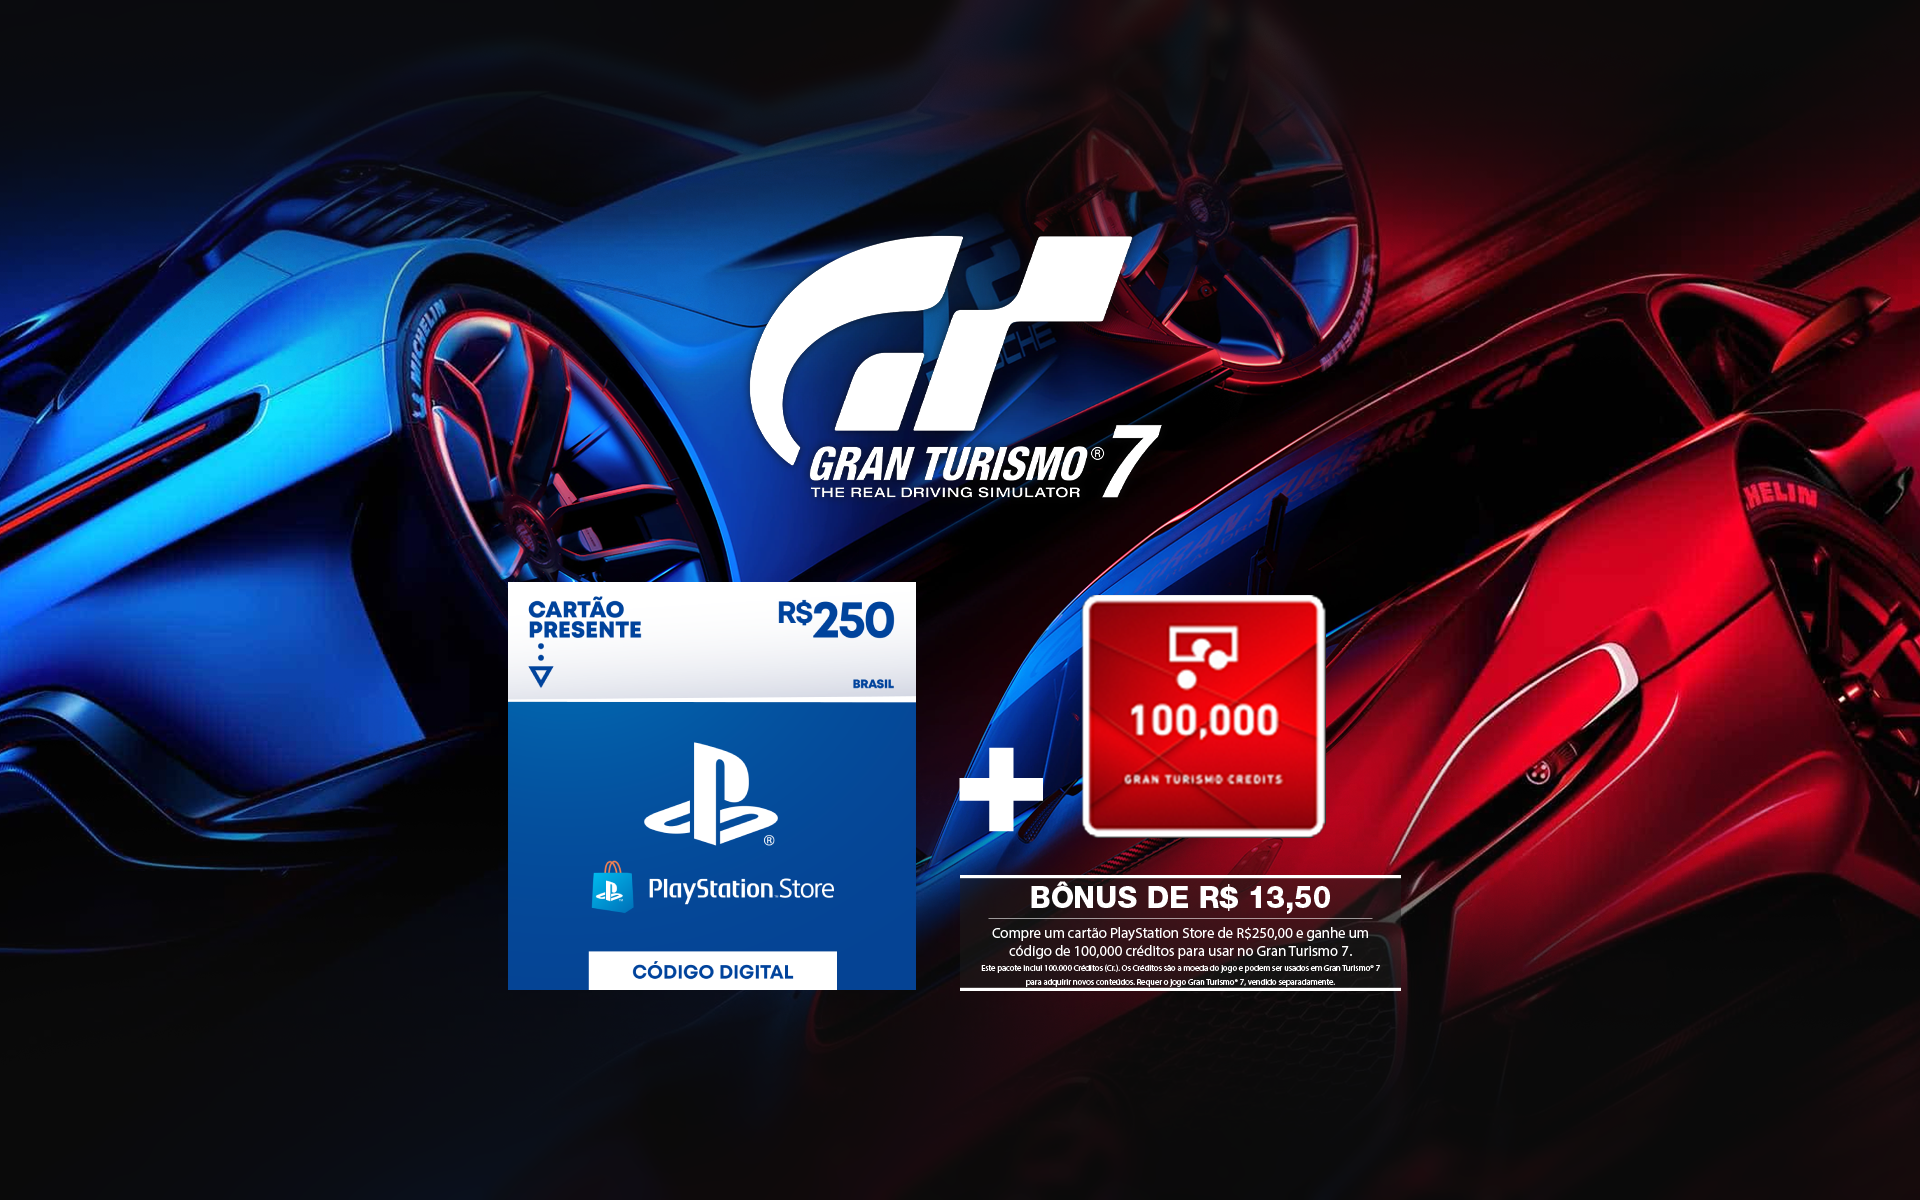 R$250 PlayStation Store - Cartão Presente Digital + 100,000 Gran Turismo Credits